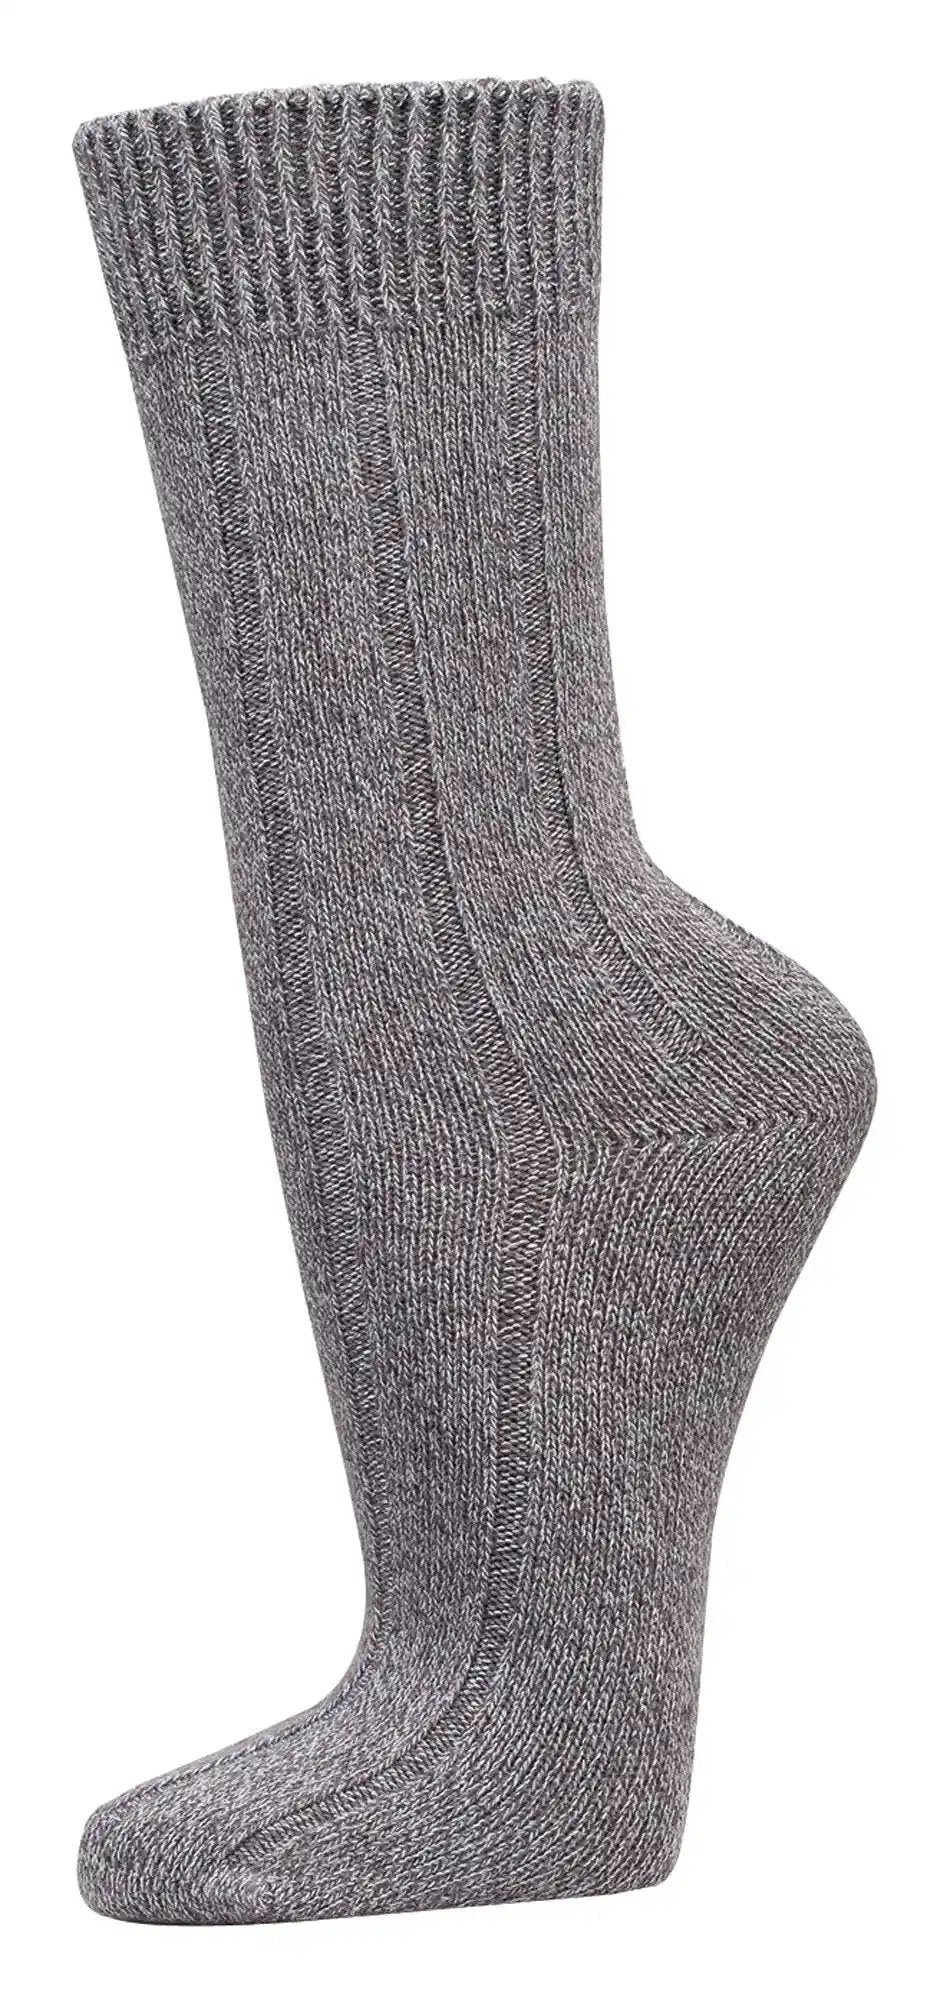 3-15 pares de calcetines WARM de viscosa de bambú, bordes suaves sin goma, para mujer y hombre